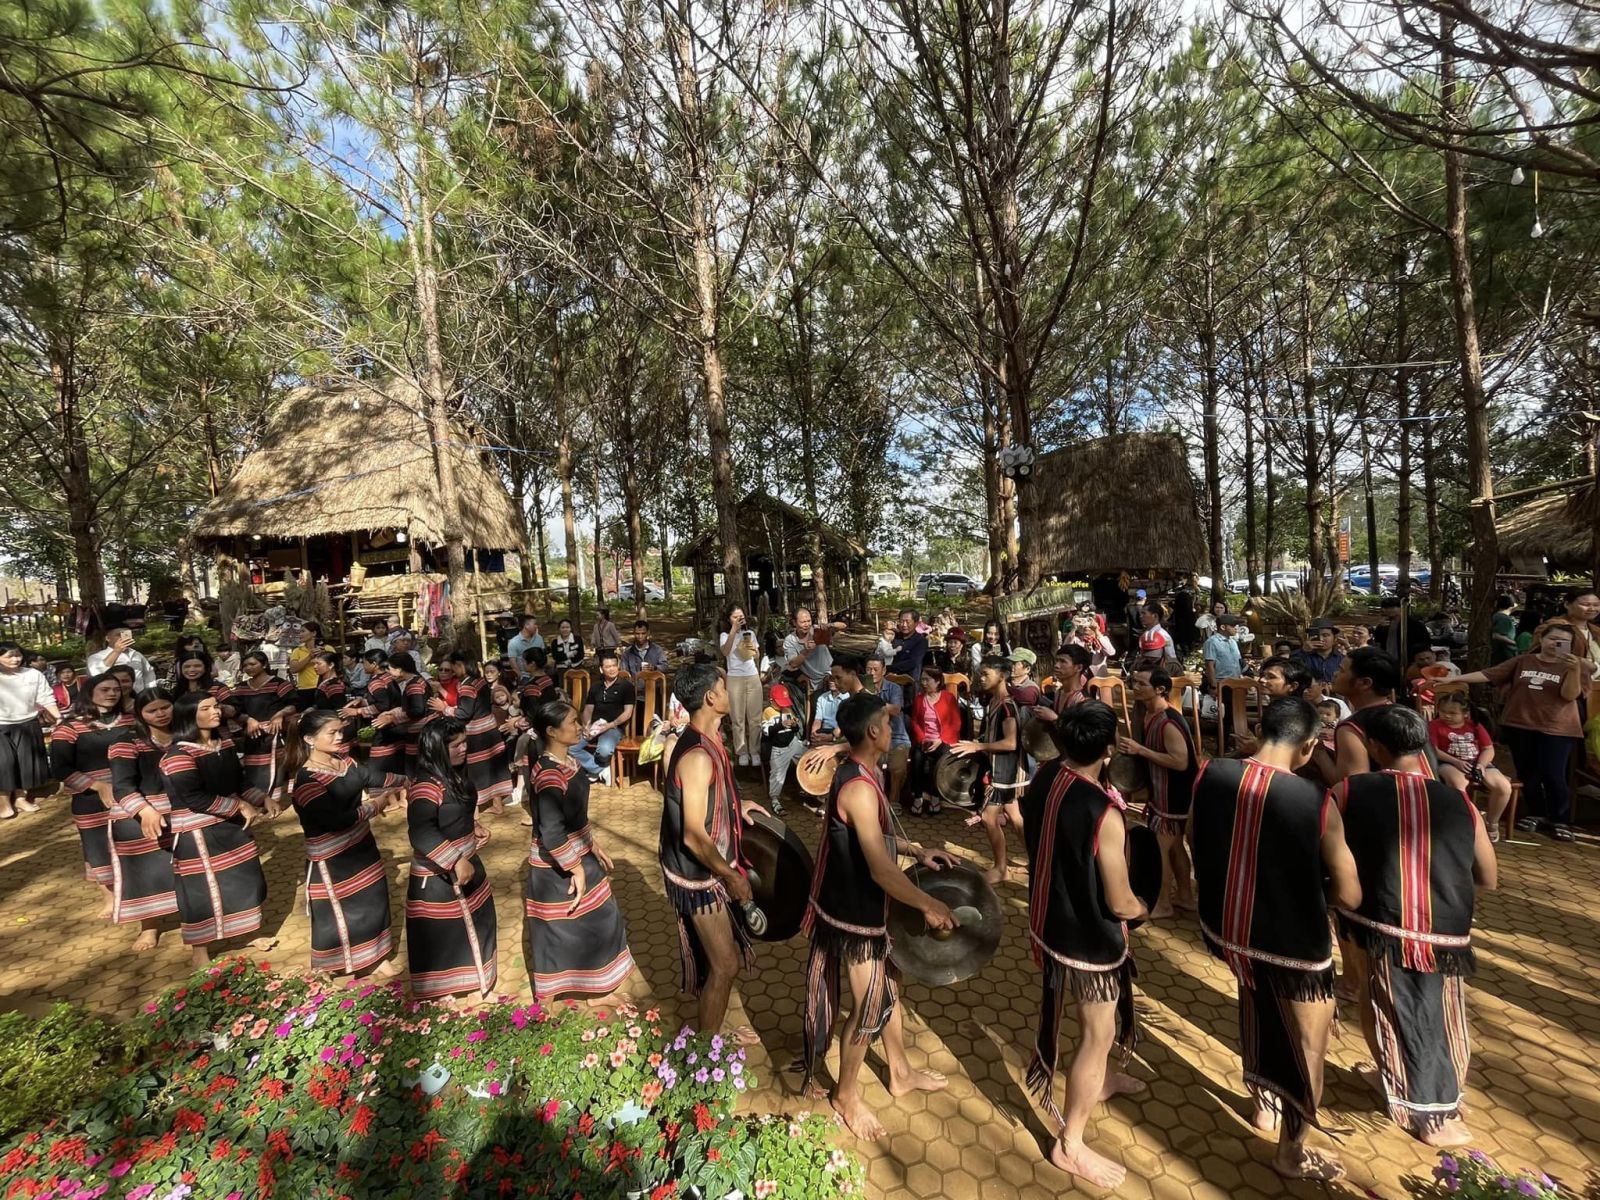 Đội nghệ nhân nhí làng Kon Vơng Kia lưu giữ văn hóa Cồng chiêng - múa Xoang